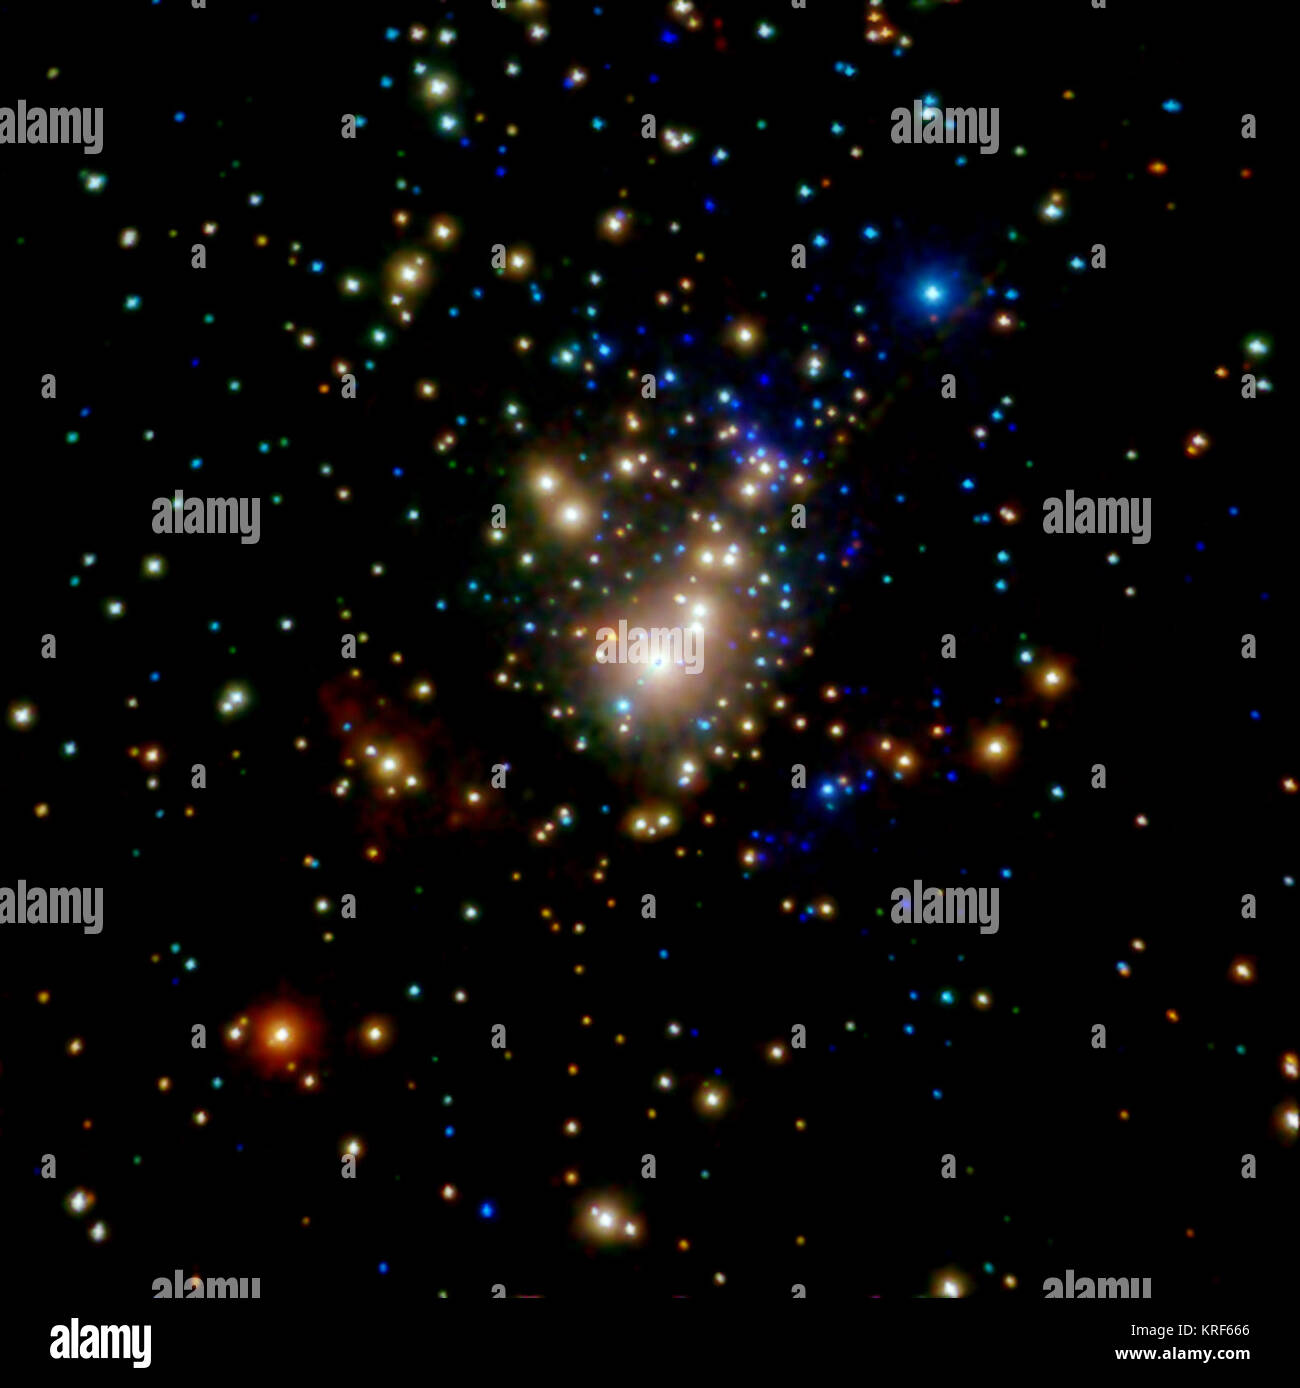 Der Orionnebel ist eines der nächsten Sternentstehungsgebiete von der Erde in einer Entfernung von 1.500 Lichtjahren. Ein Favorit für Amateurastronomen und casual sky Watcher, Orion wird gesehen, wie nie zuvor in diesem zusammengesetzten Bild von Chandra und Hubble Daten erstellt. Die wispy Filamente gesehen von Hubble (rosa und violett) sind Wolken aus Gas und Staub, das Material, das als Kraftstoff im junge Sterne verwendet werden. Die helle punktförmige Quellen (blau und orange) neu gebildet werden Sterne in X-ray Light von Chandra. Diese noch junge Sterne sind zu sehen Flair in Ihre X-ray Intensität, was darauf schließen lässt, dass unsere Sonne hatte Stockfoto